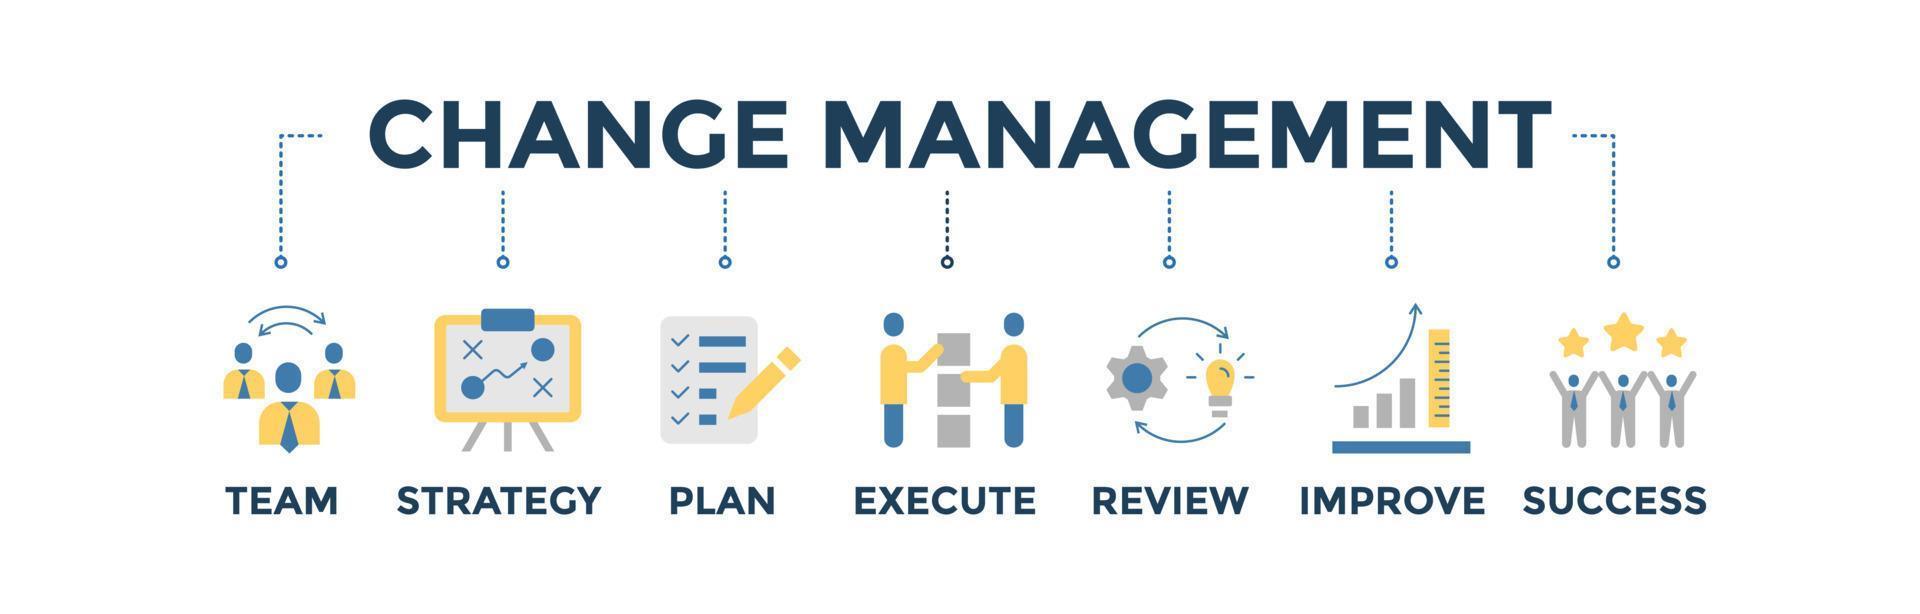 Change Management Banner Web Icon Vektor Illustration für Unternehmensberatung, Organisation und Transformation mit Icons Set aus Team, Plan, Strategie, Ausführung, Überprüfung, Verbesserung und Erfolg